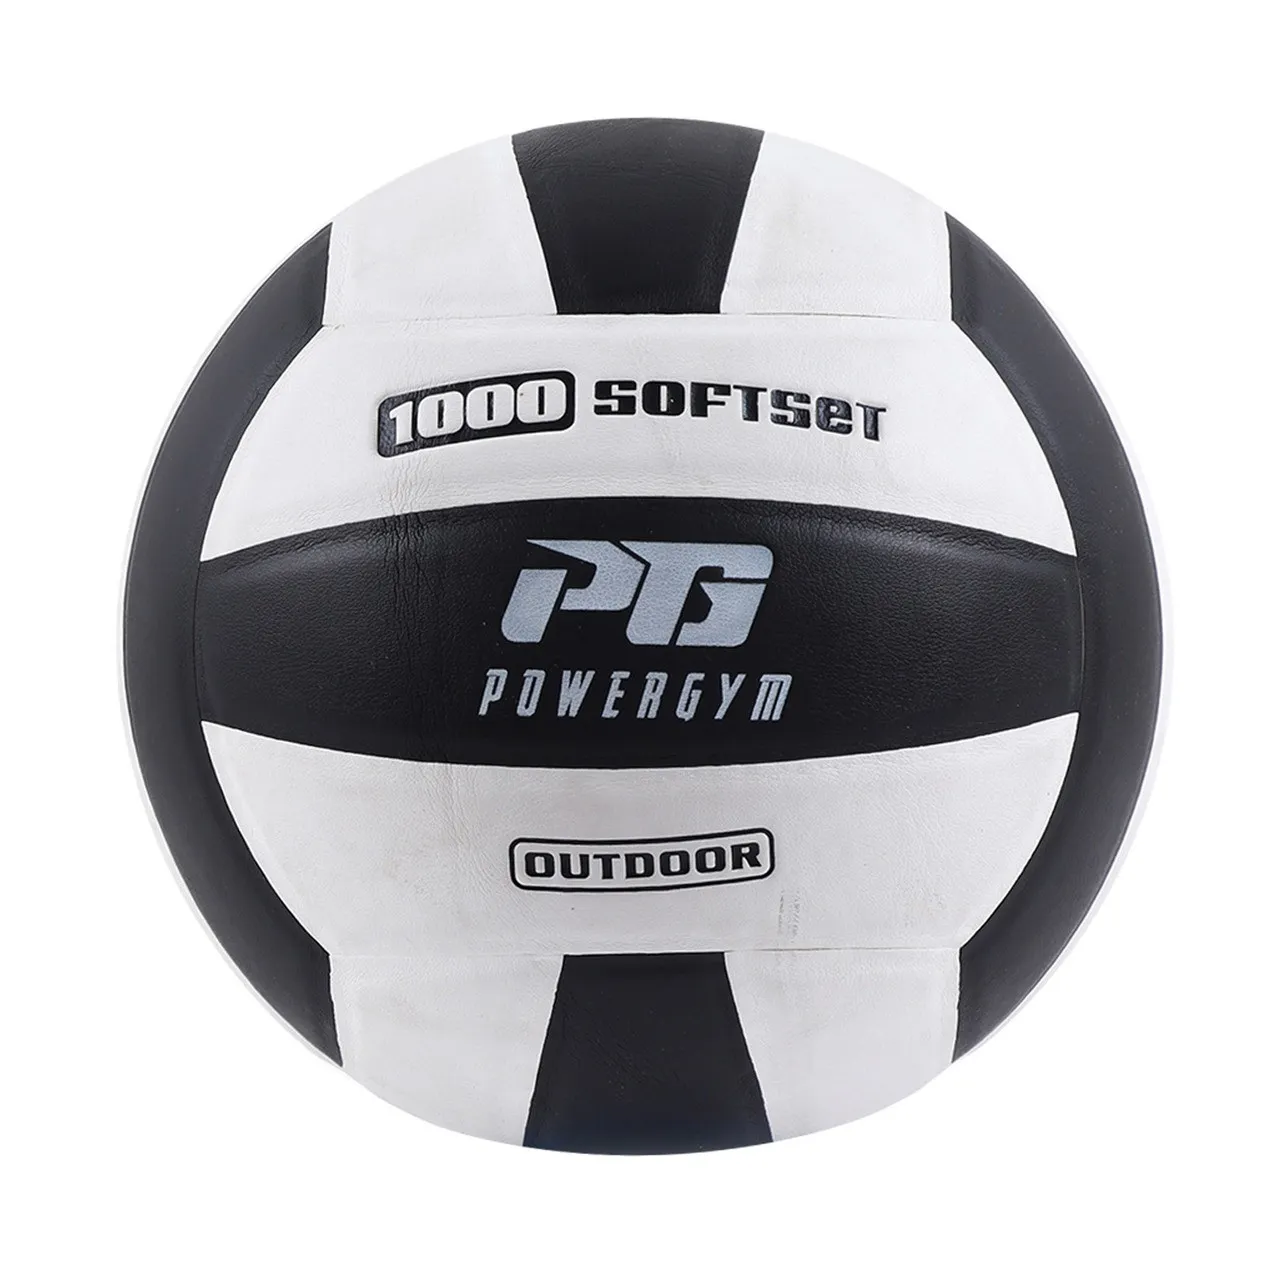 Волейбольный мяч Powergym 1000 Softset#1